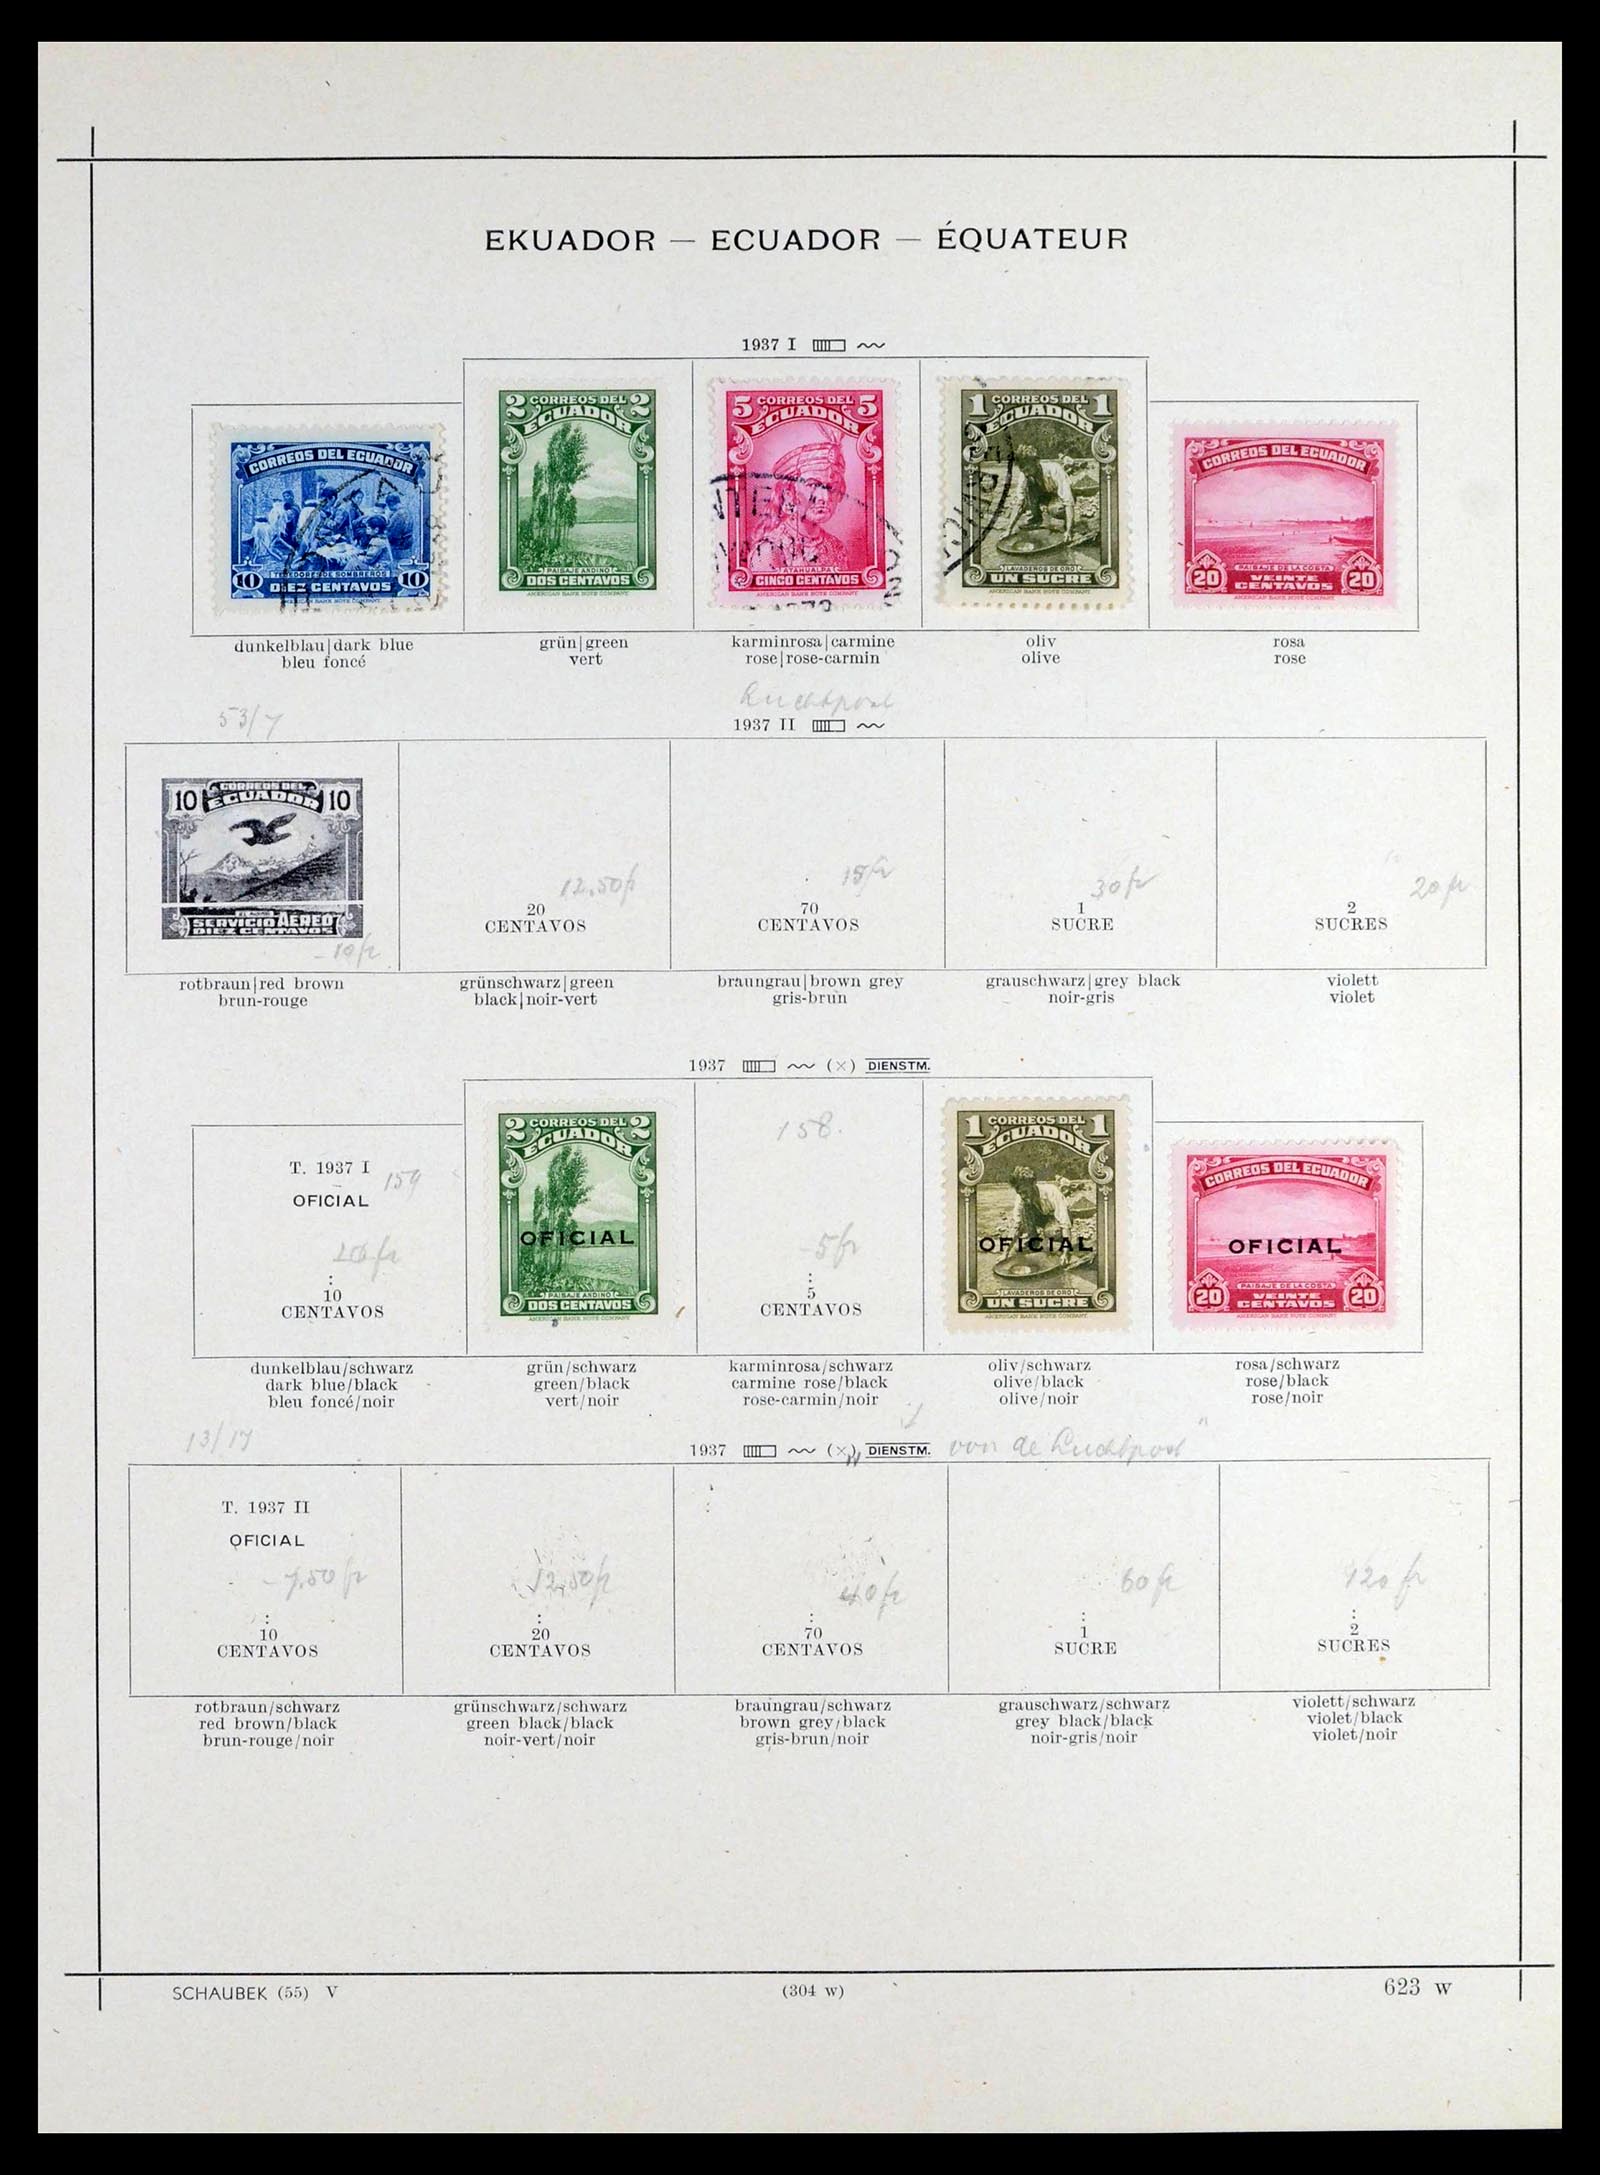 39456 0050 - Stamp collection 39456 Ecuador 1865-1960.